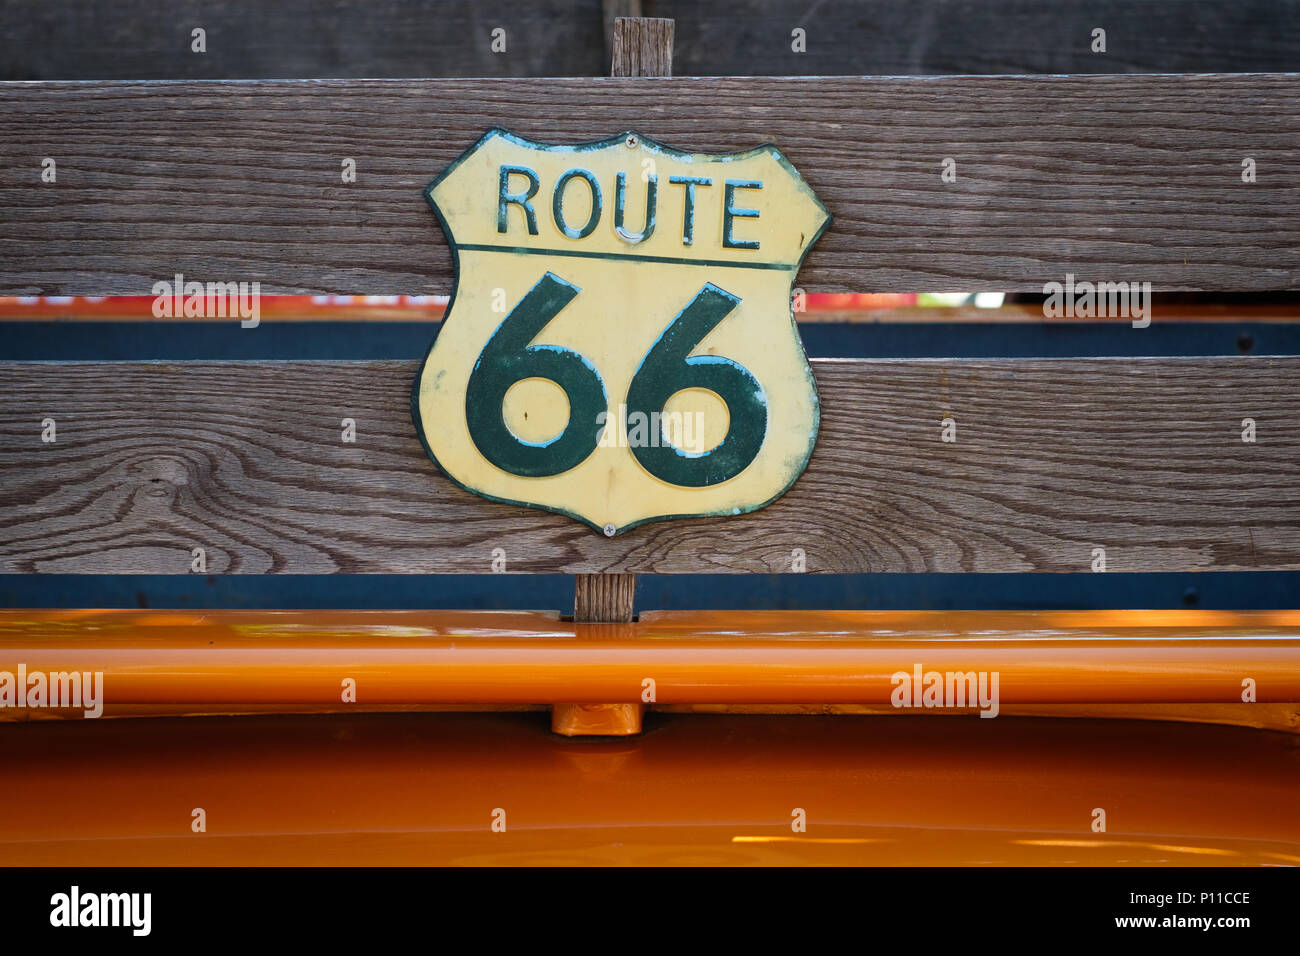 Vintage route 66 road sign sur des planches de camionnette Banque D'Images